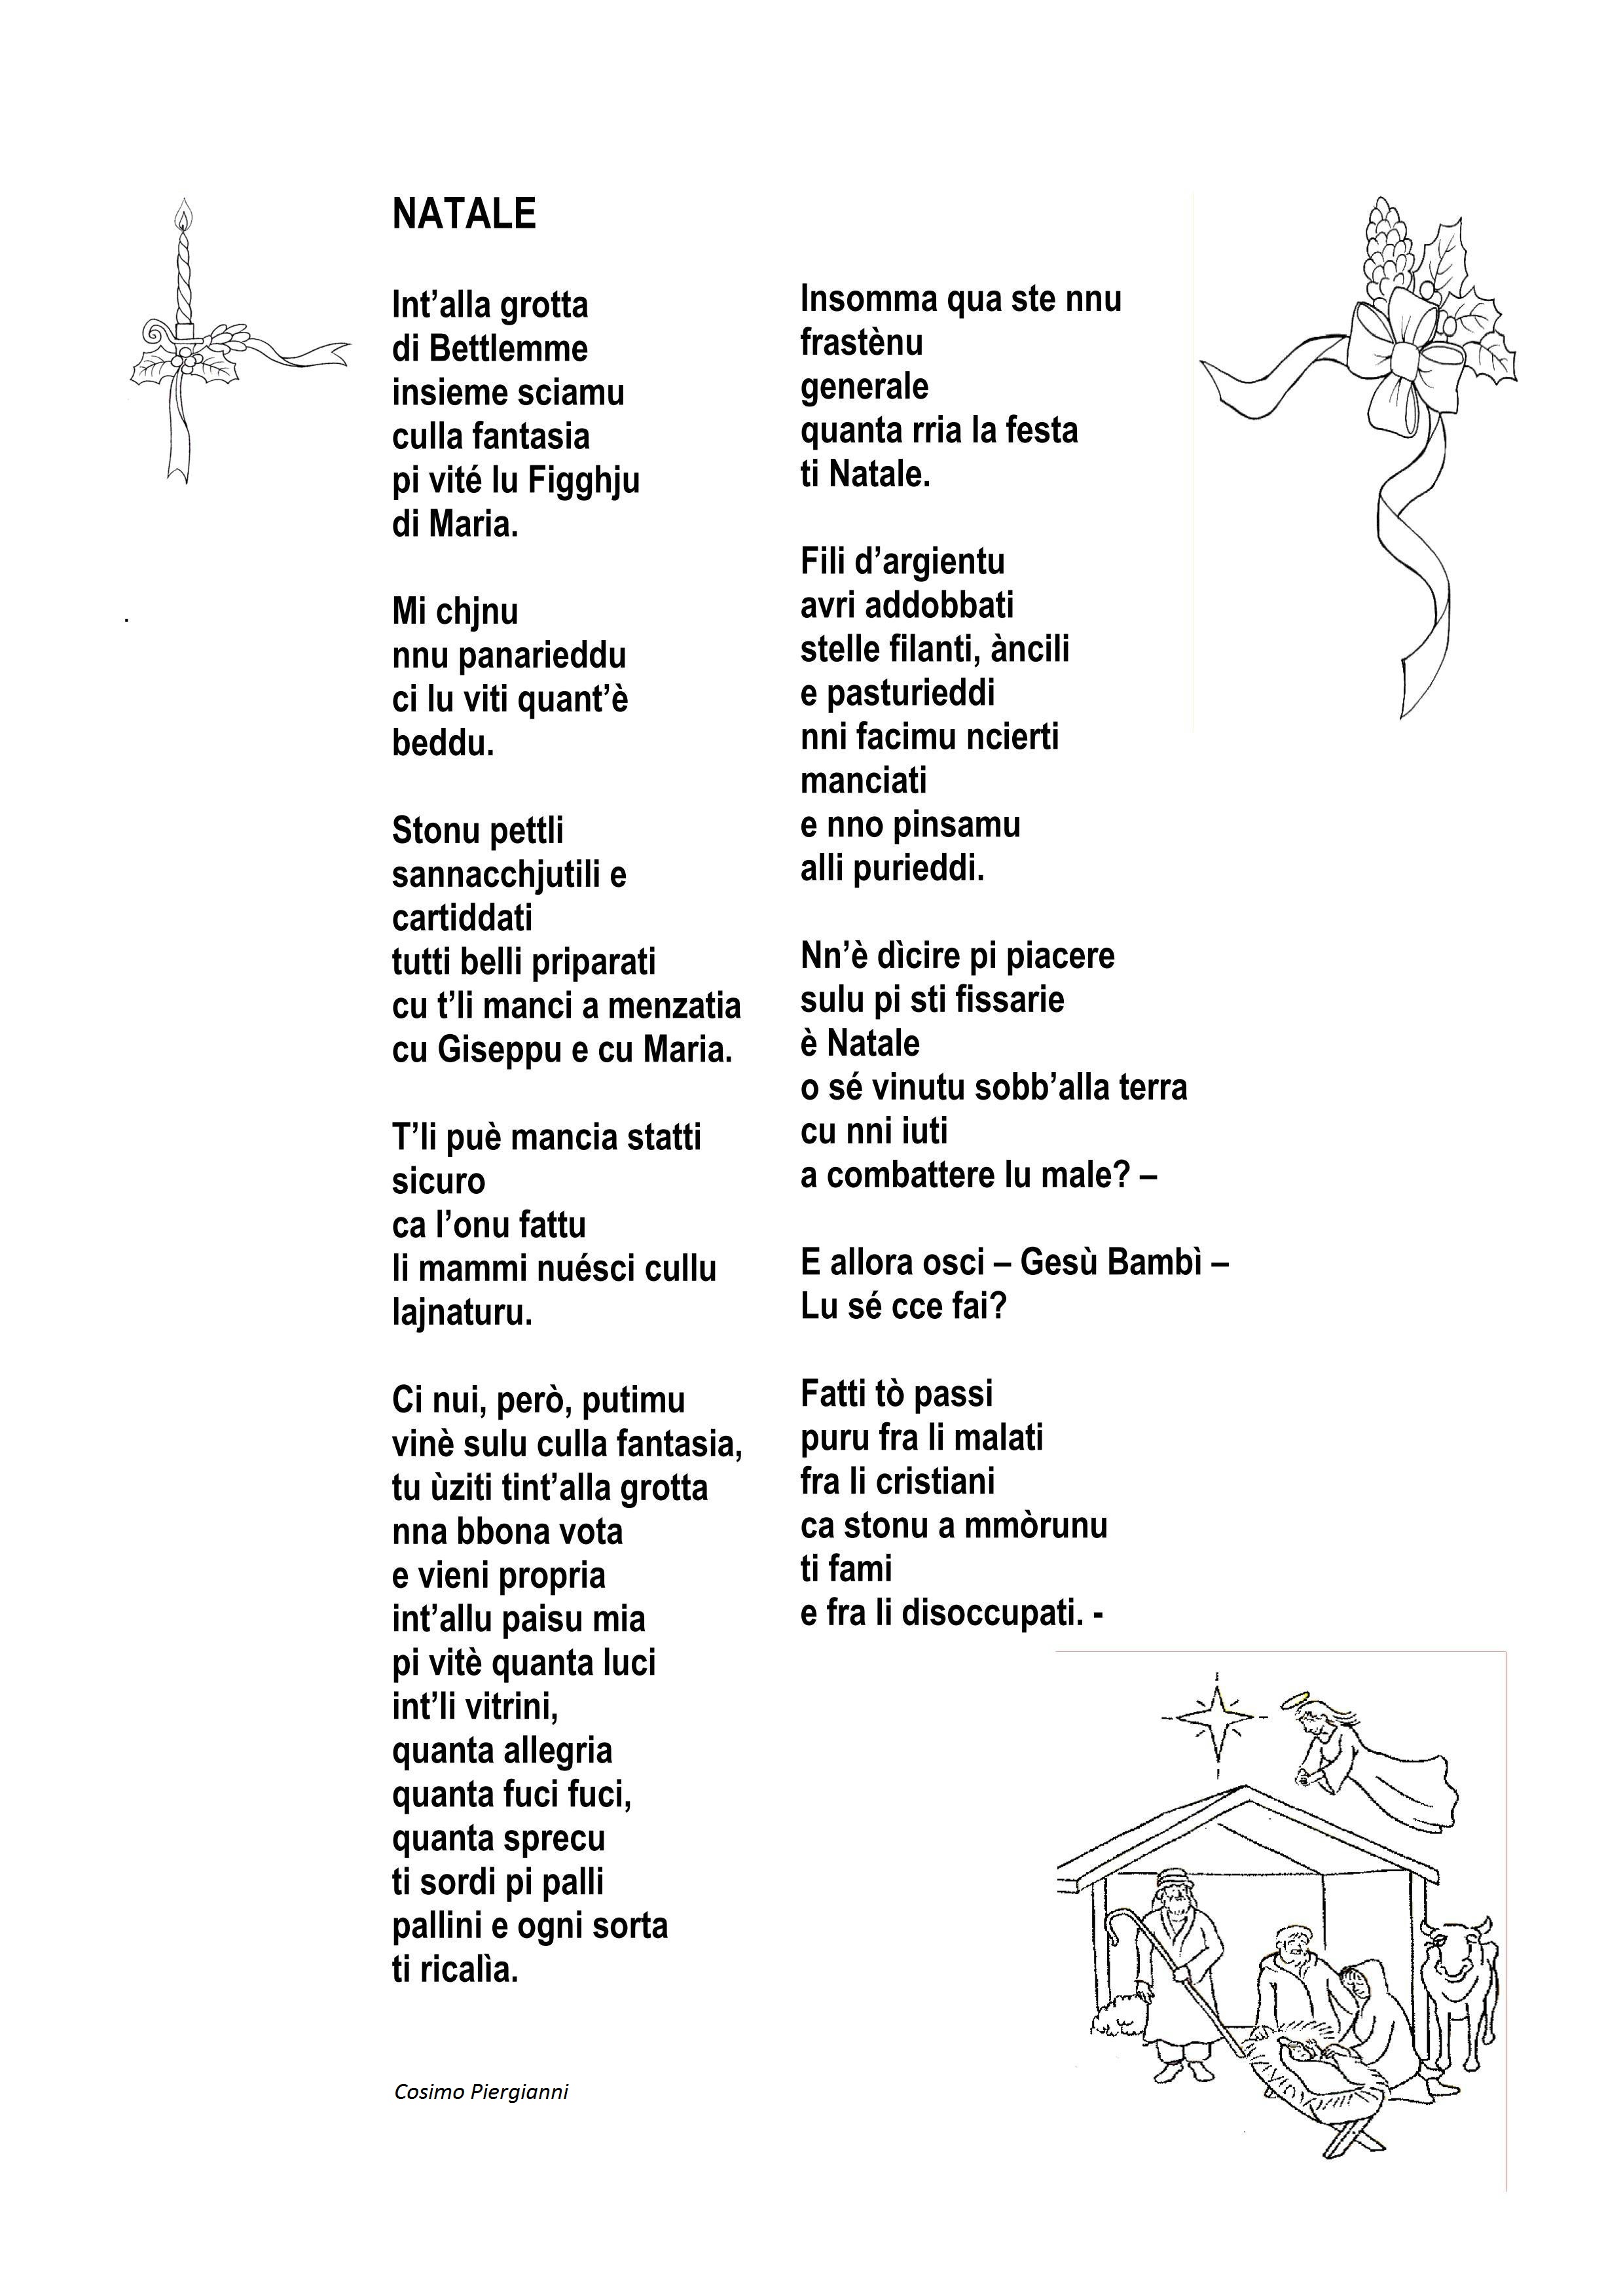 Poesie Di Natale In Dialetto Siciliano.Antologia Di Poesie Dialettali Per Natale Grottagliesita Blog